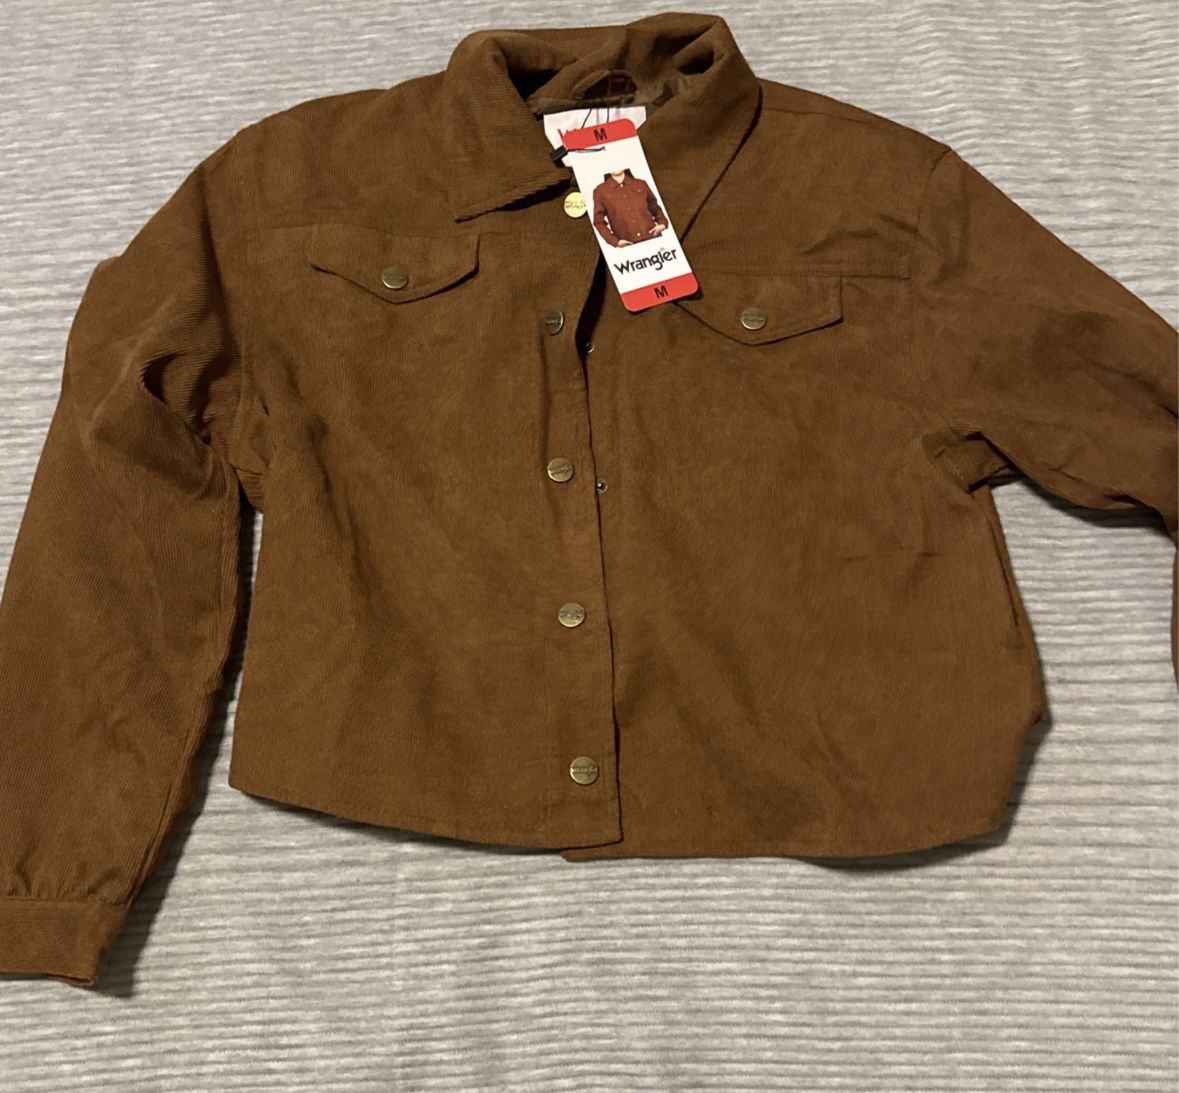 New Wrangler Corduroy Cropped Shirt Jacket Medium 